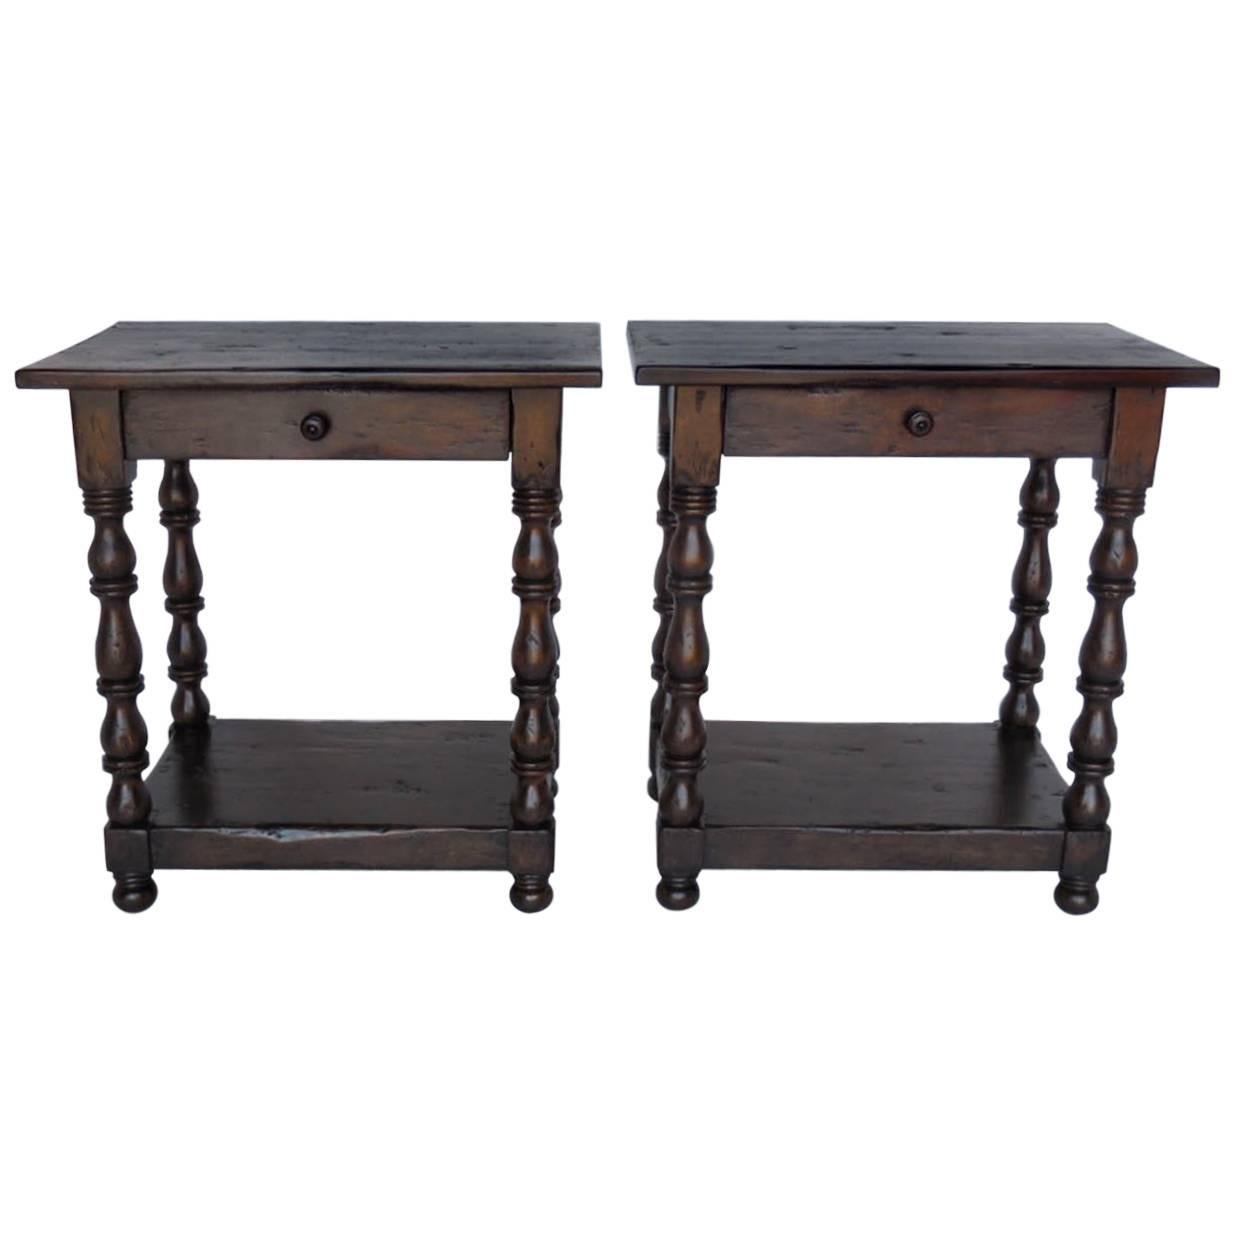 Tables d'appoint / tables de chevet sur mesure de Dos Gallos avec pieds tournés, tiroir et étagère en vente